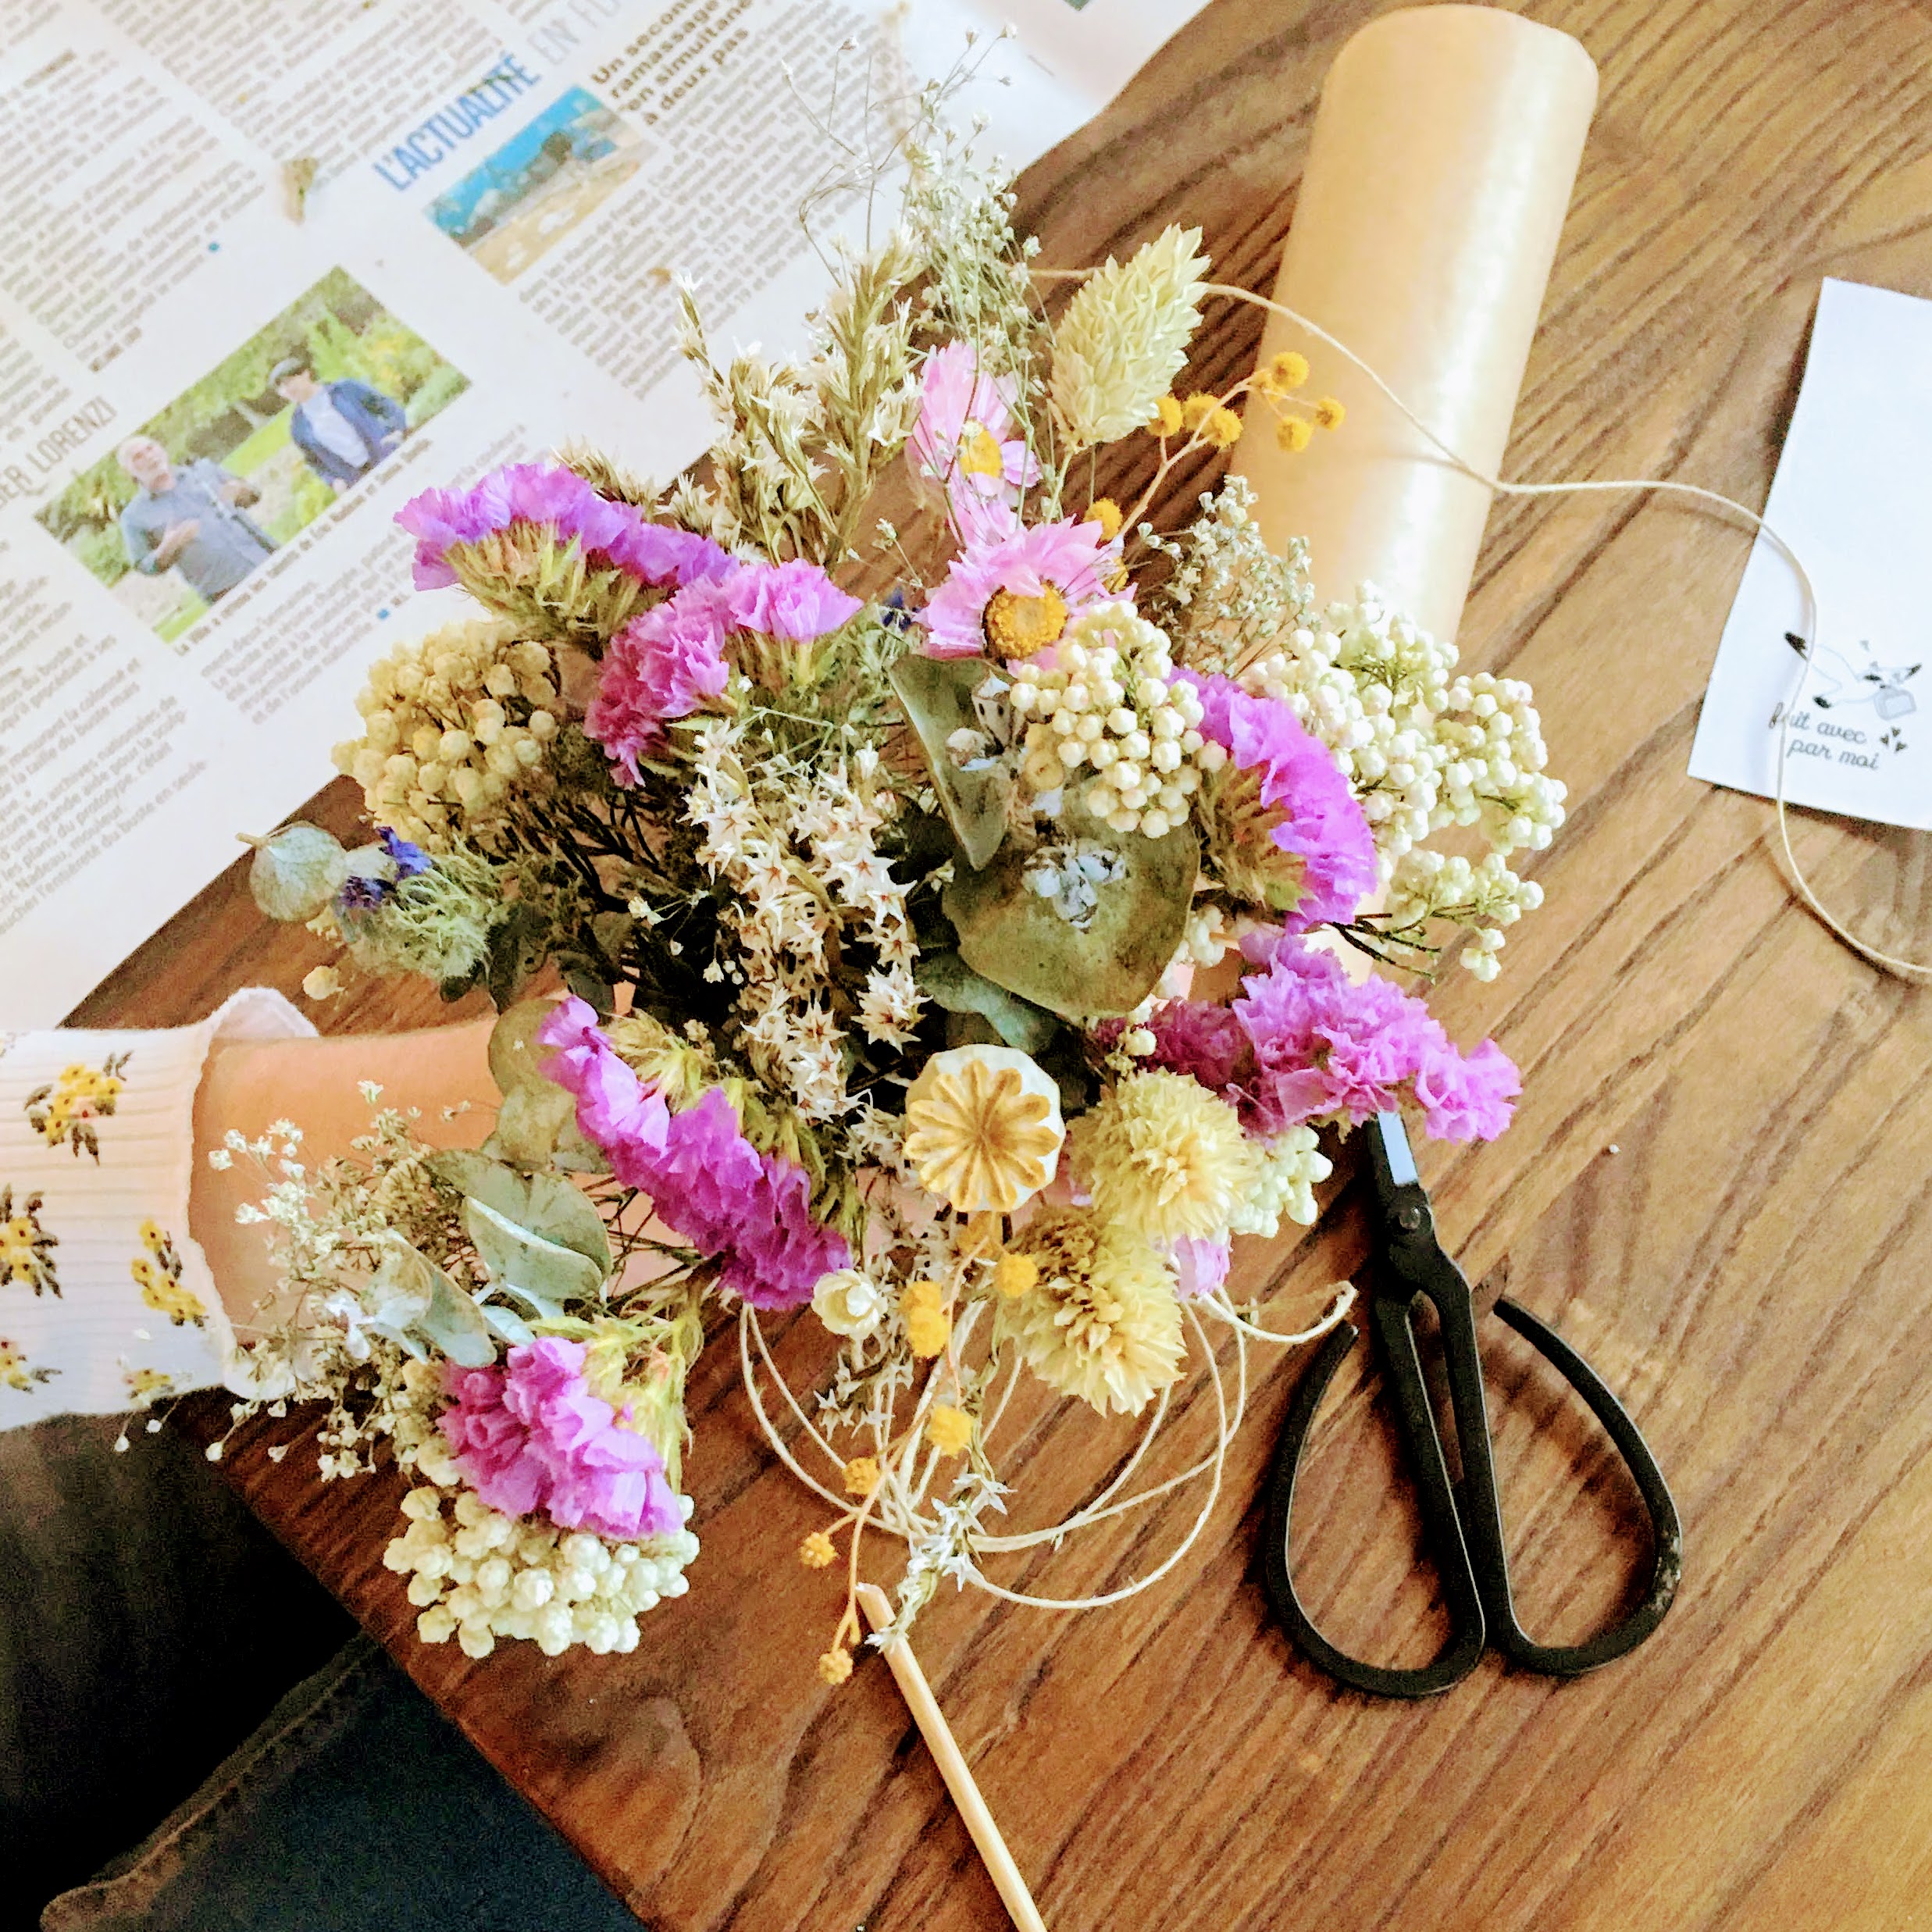 ateliers créatifs poétiques autour des fleurs séchées dans le Pas de Calais entre Boulogne, Wimereux, Le Touquet, Hardelot près de Wissant - du vent dans mes valises